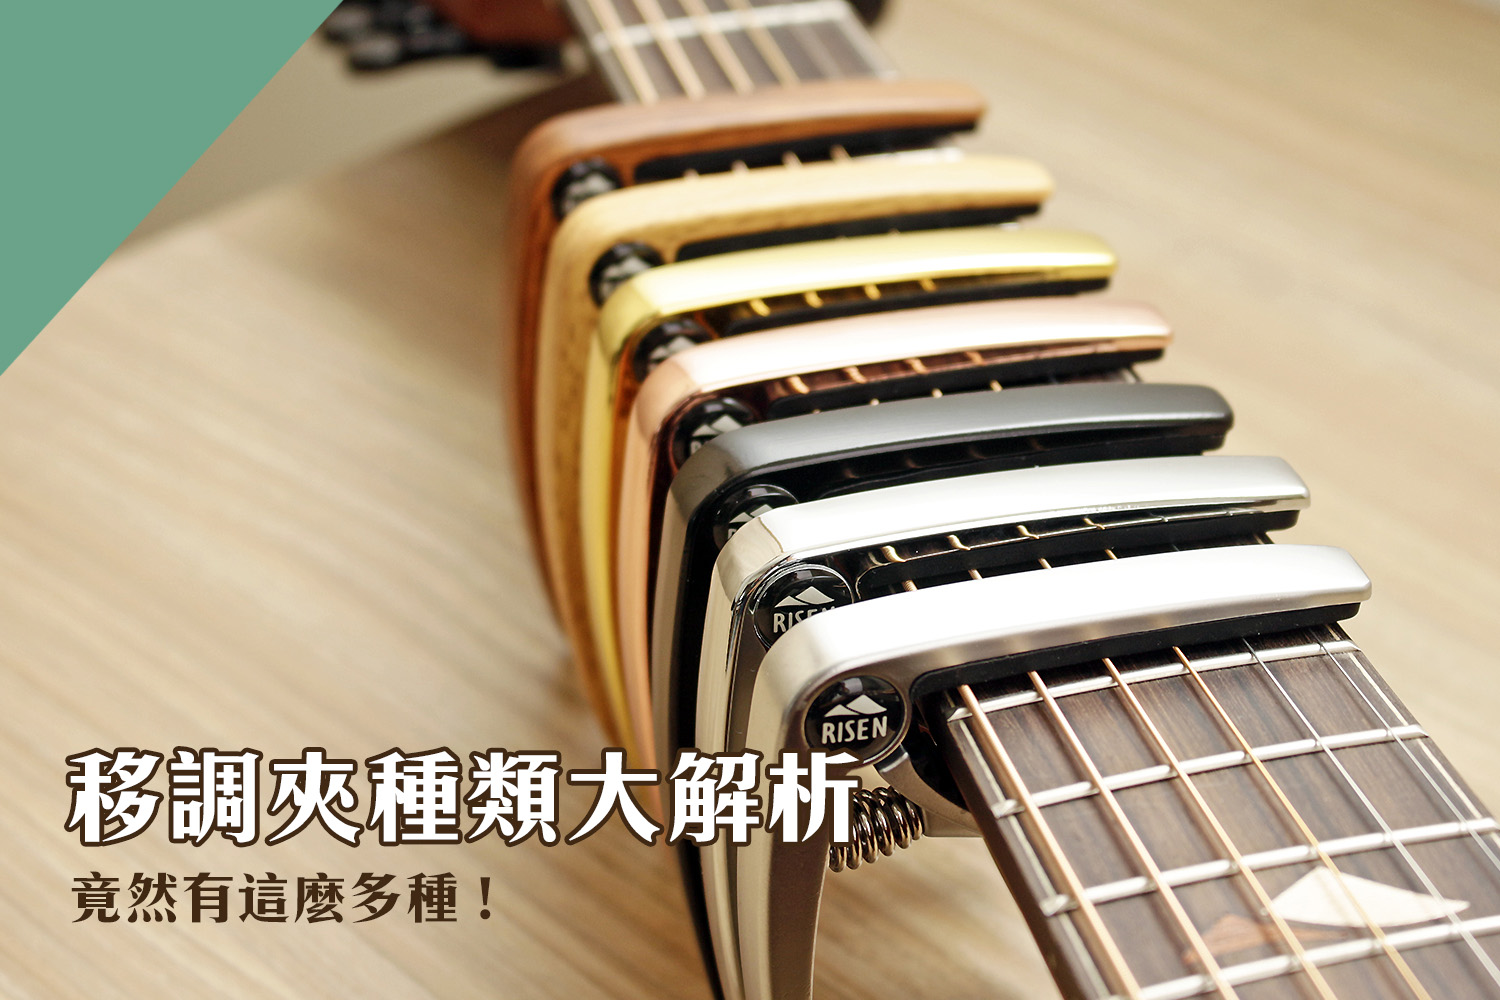 移調夾推薦介紹：9款彈吉他必備的移調夾，種類、用途大解析